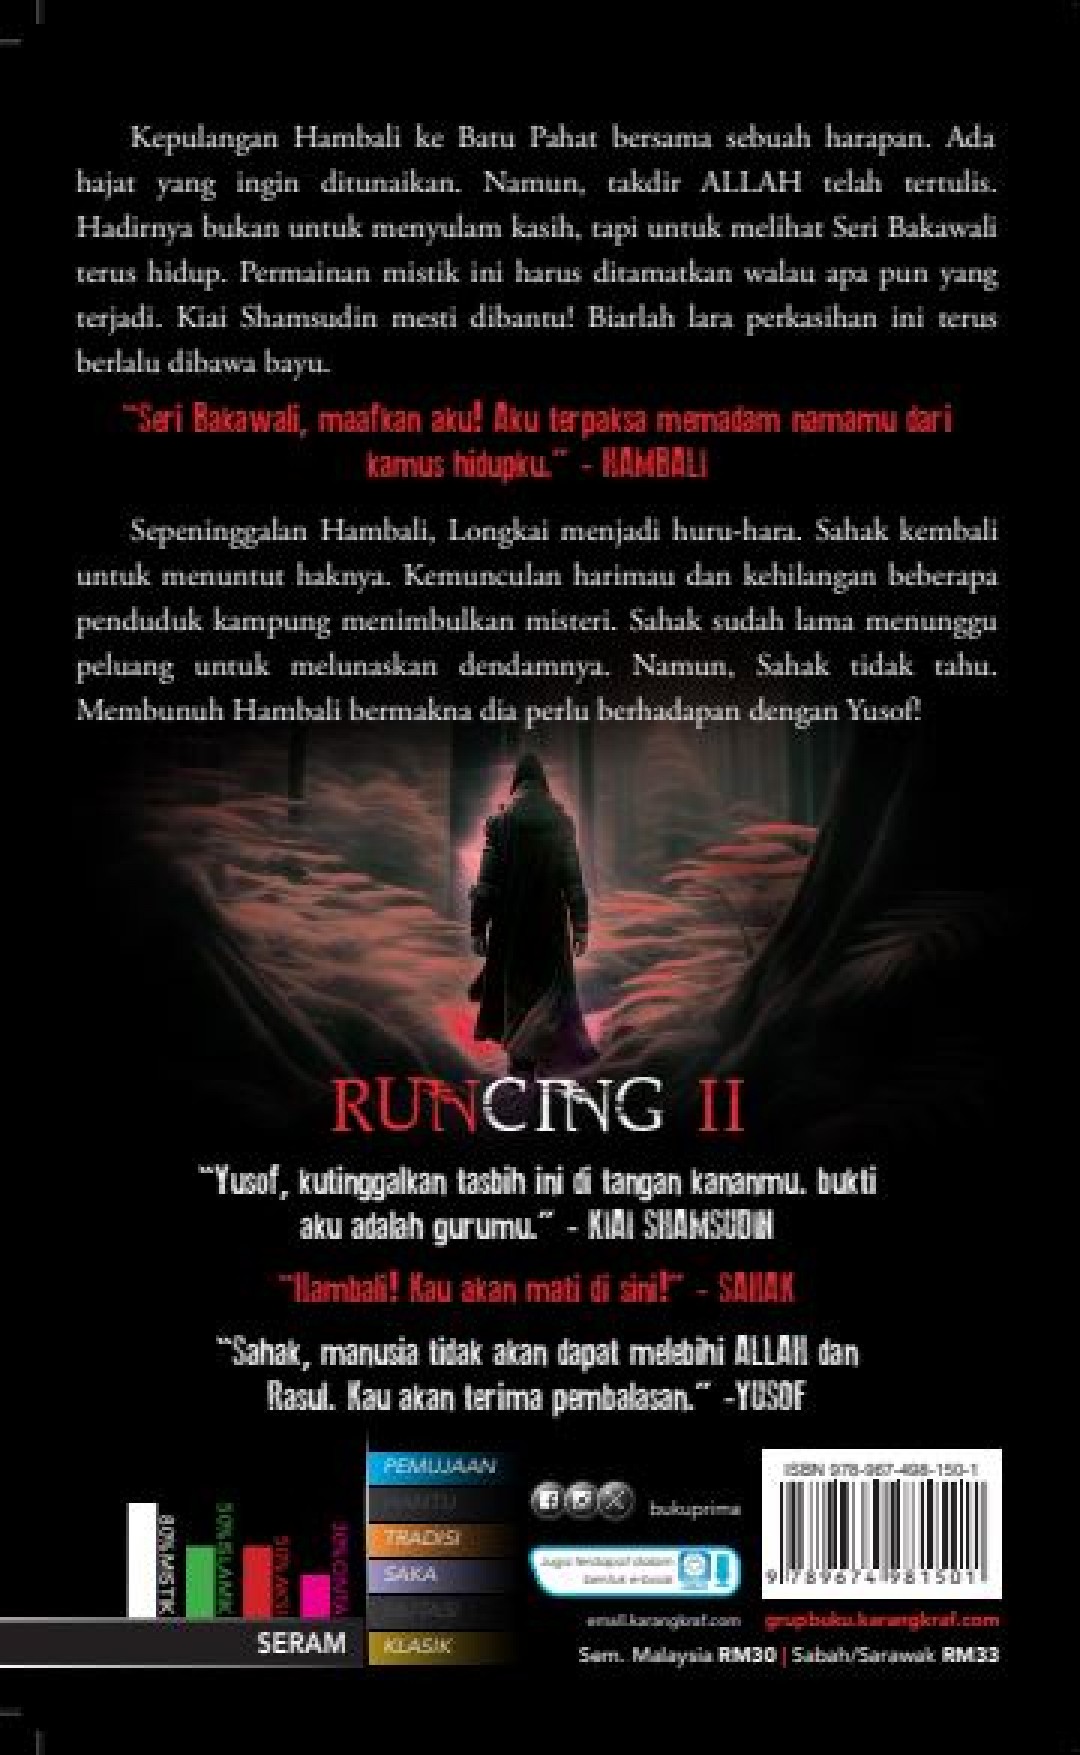 Runcing II - Zharulnizam Z.A